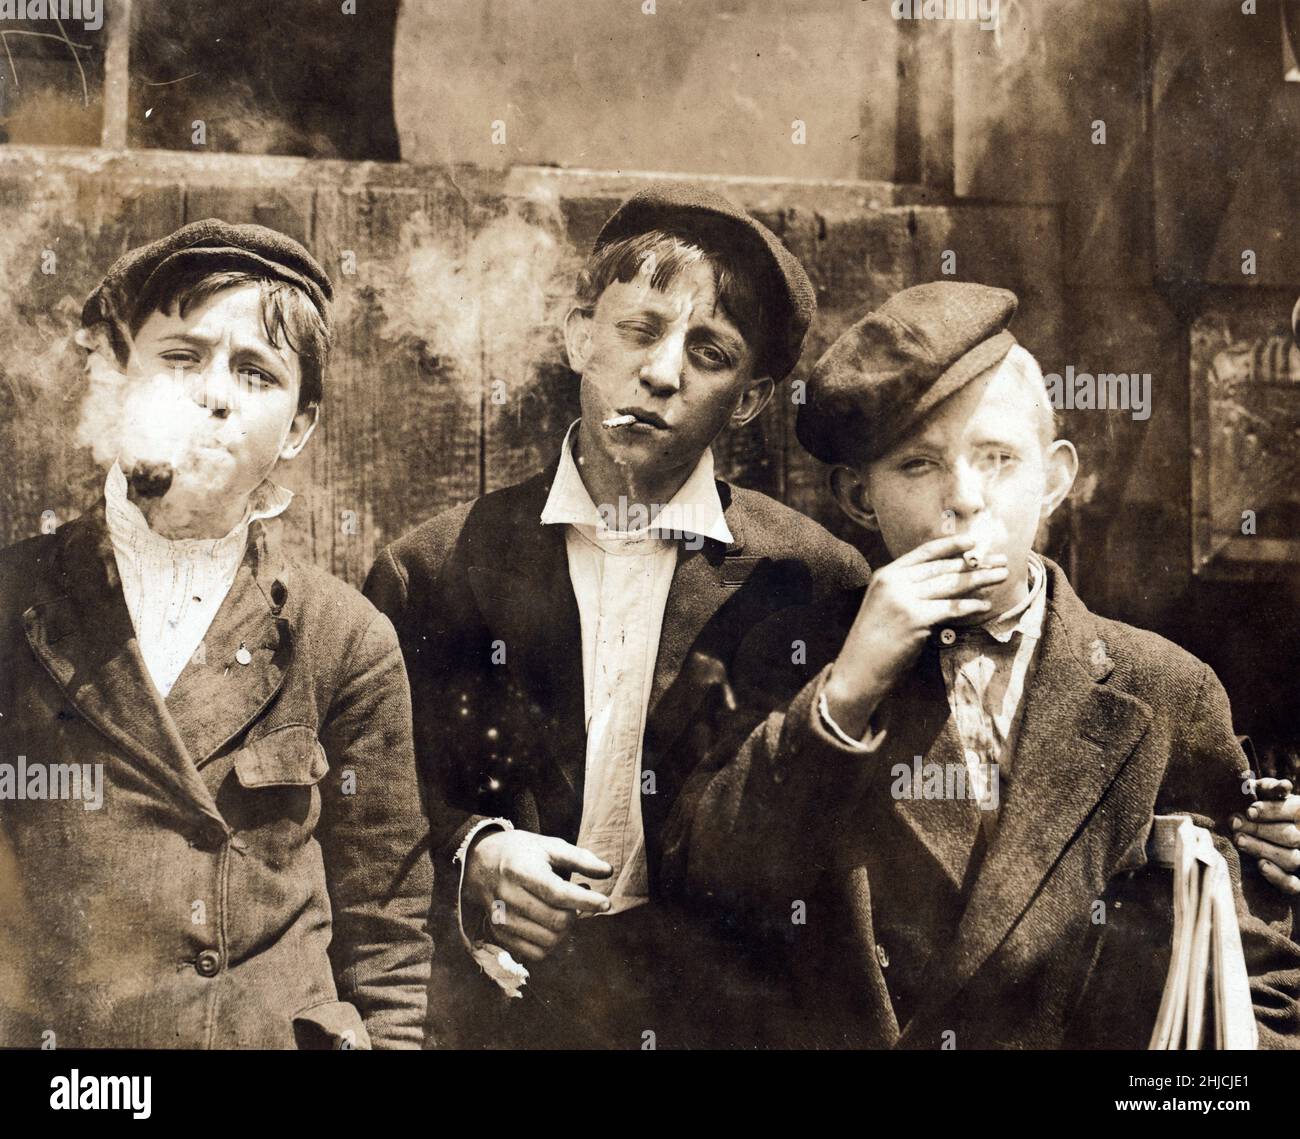 Newsies at Skeeter's Branch, on Jefferson Near Franklin at 11:00 di lunedì 9th maggio 1910. Tutti fumavano. Fotografato da Lewis Hine a St. Louis, Missouri. Foto Stock